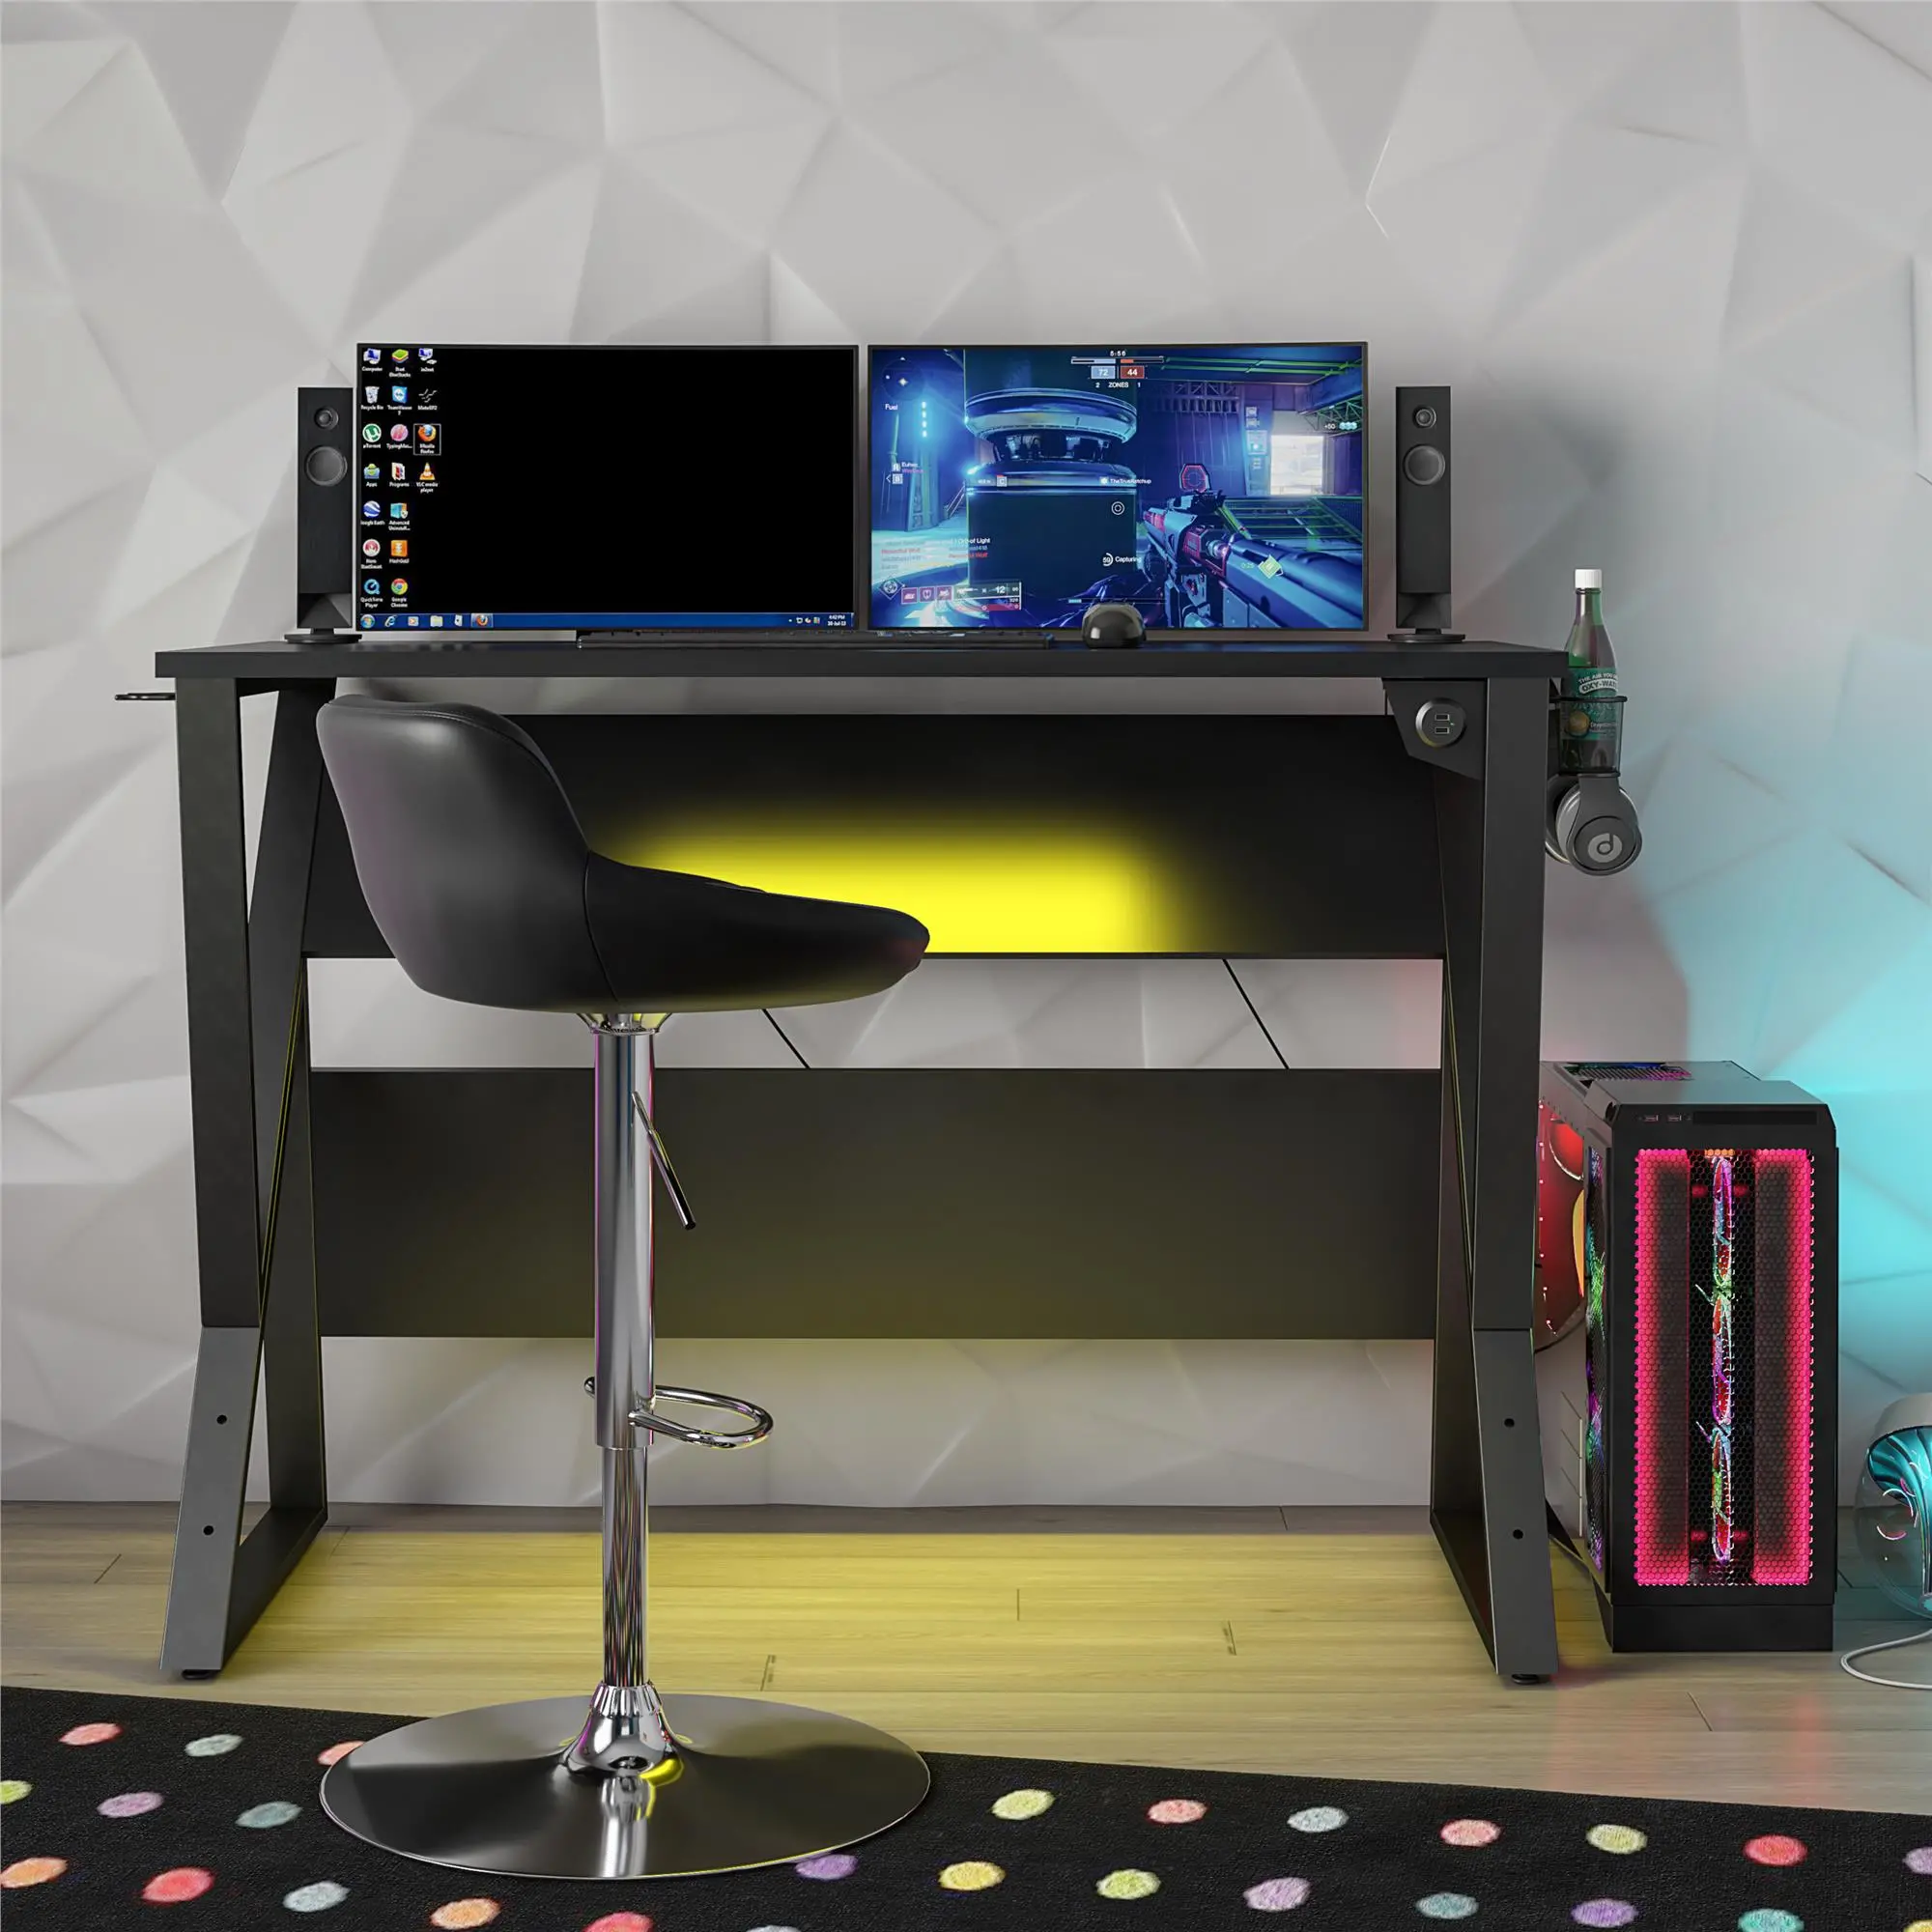 Genesis Black Adjustable Gaming Desk